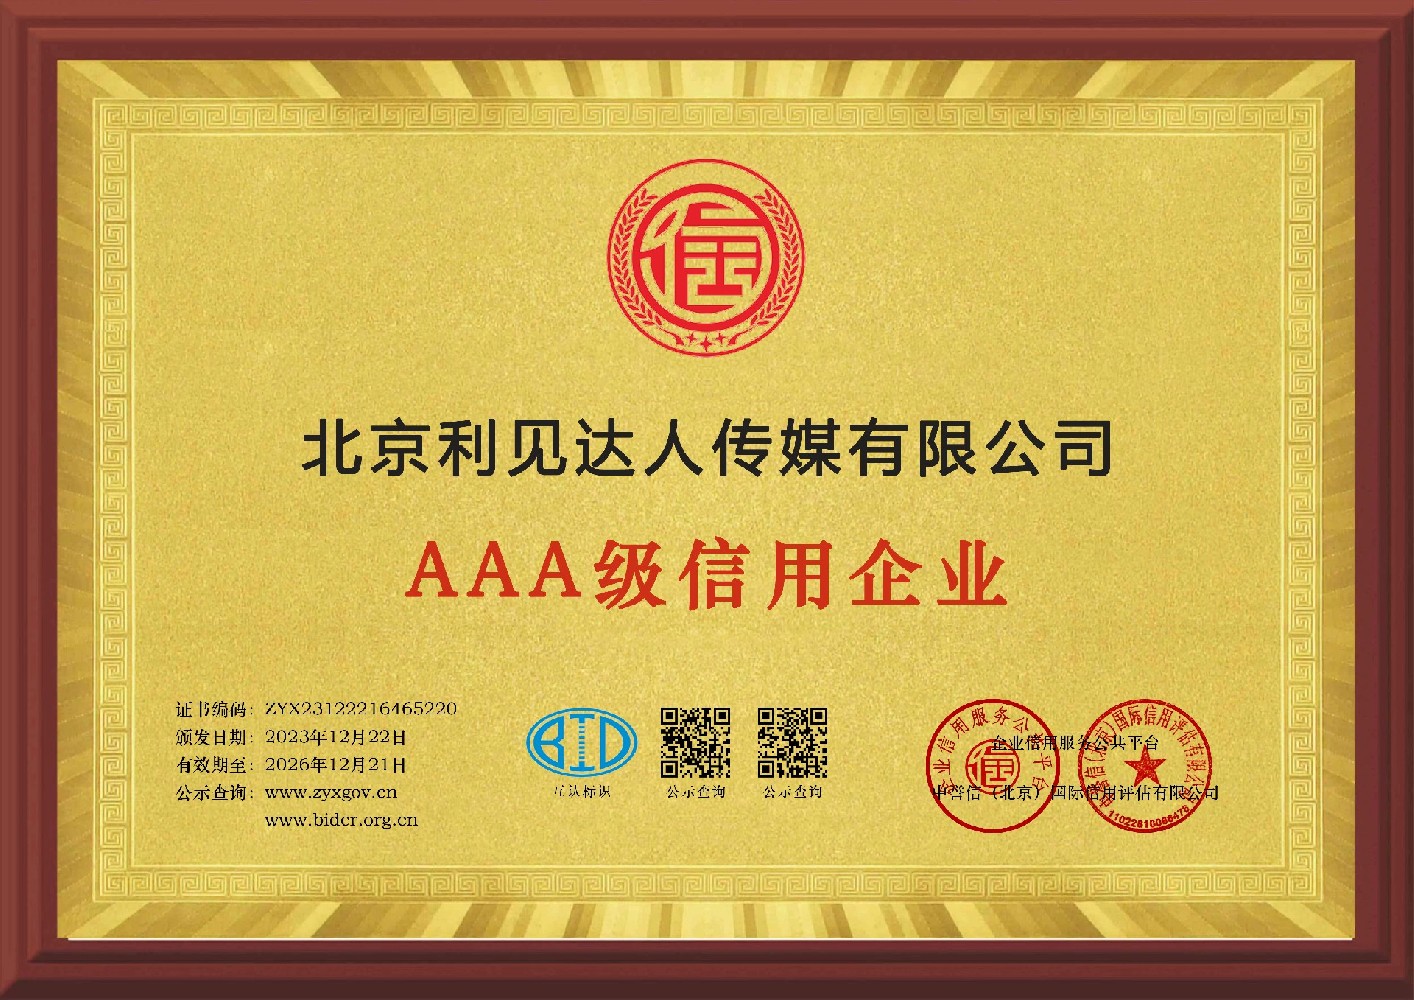 AAA级信用企业——北京利见达人传媒有限公司